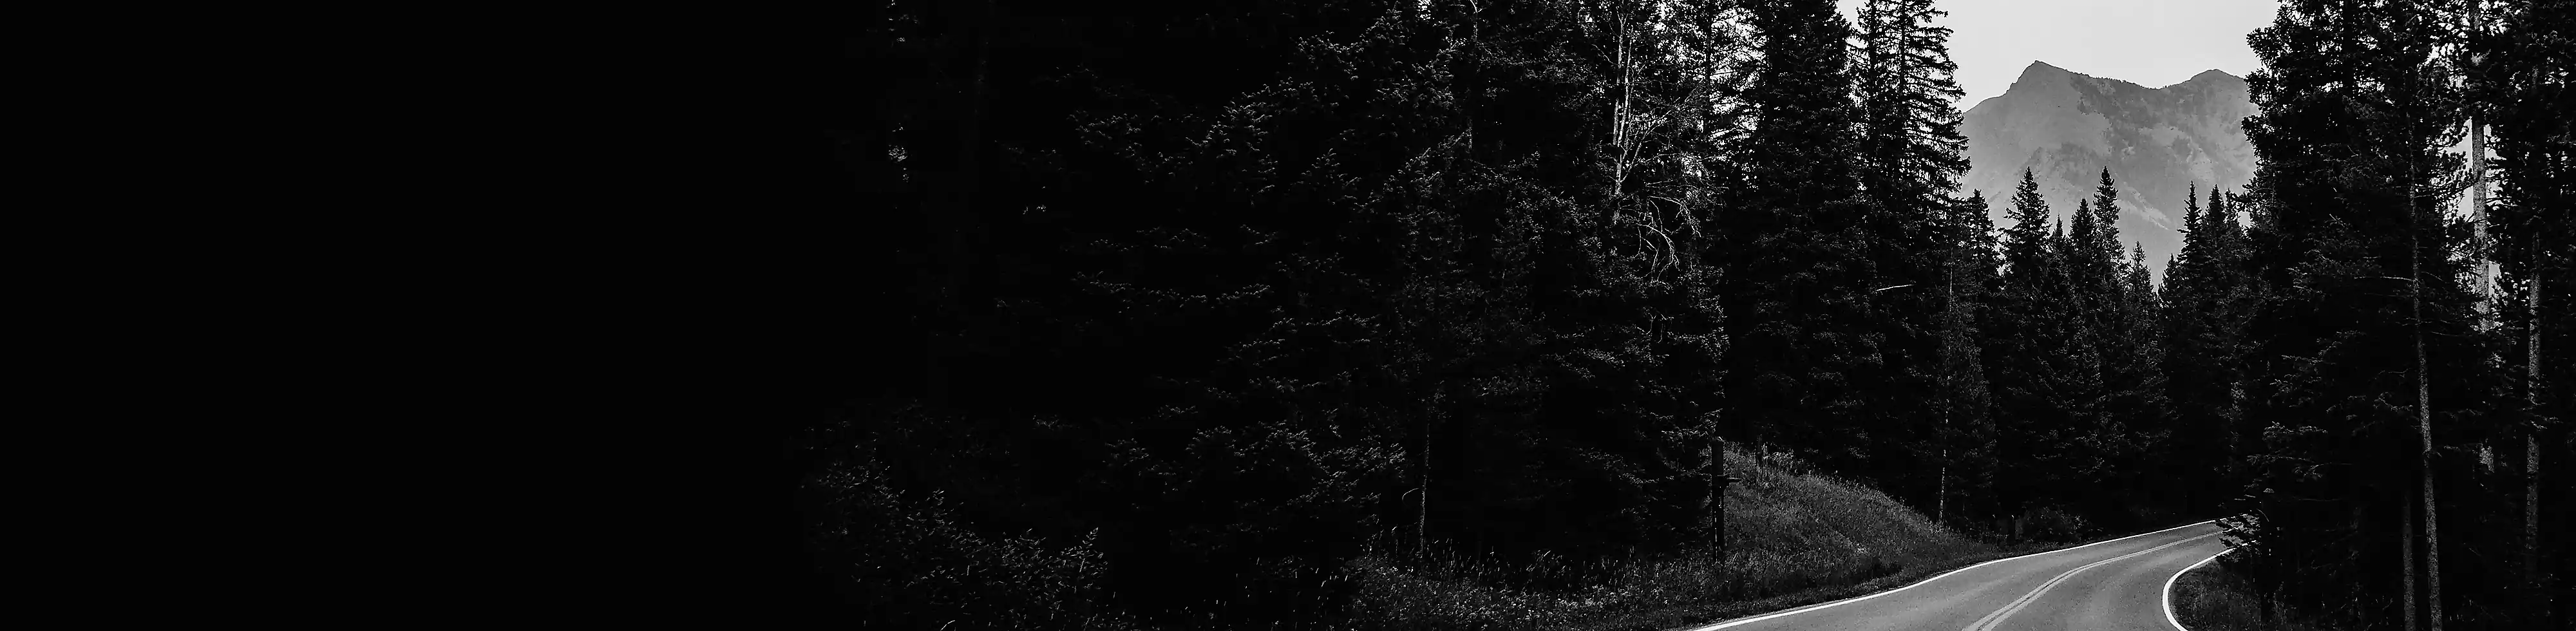 En tosporet vej gennem en skov med en bjergtop i baggrunden, i sort og hvid.